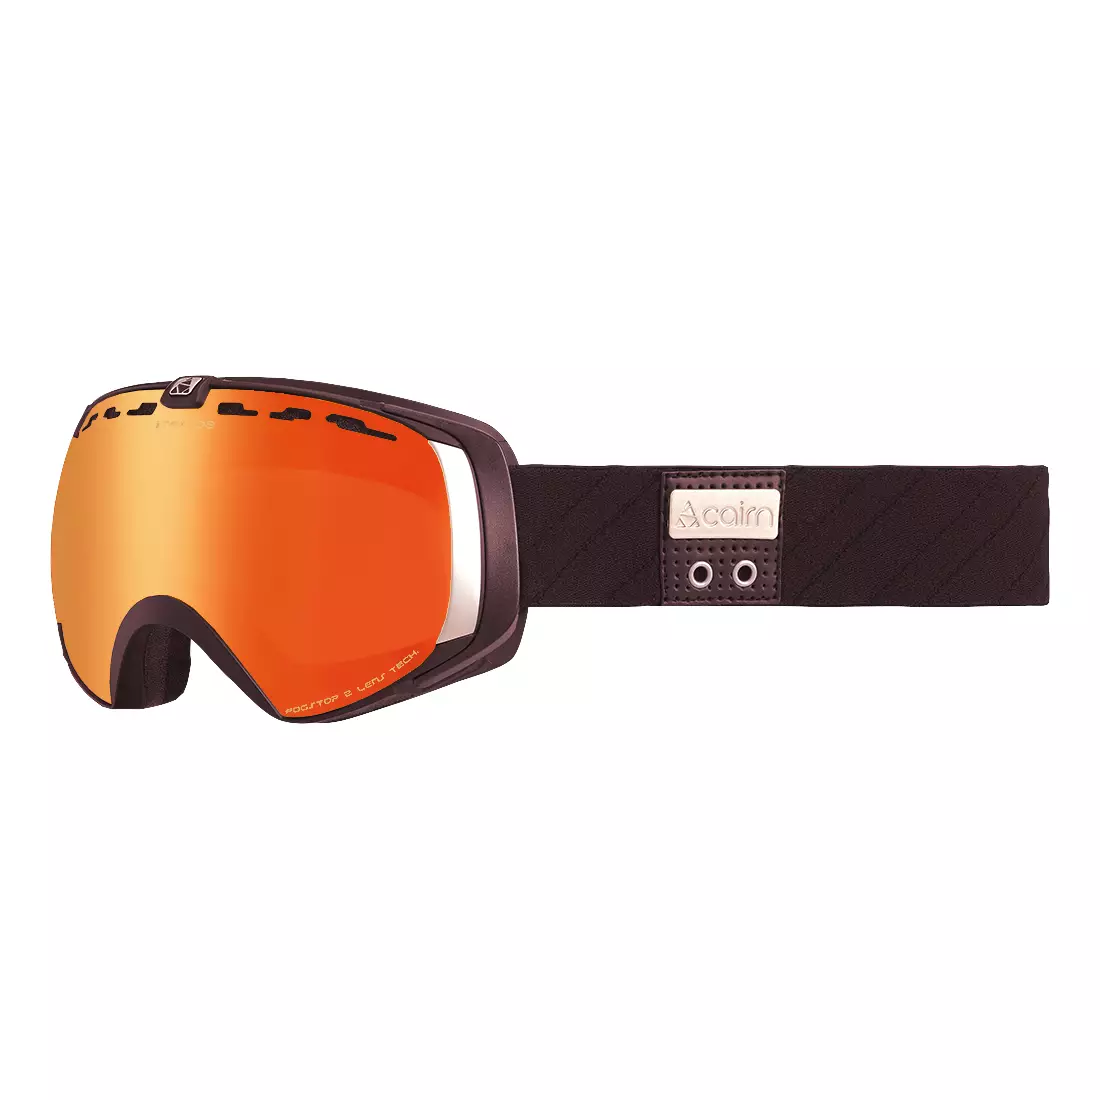 CAIRN STRATOS SPX3000 IUM ochelari de protecție pentru bicicletă, portocale